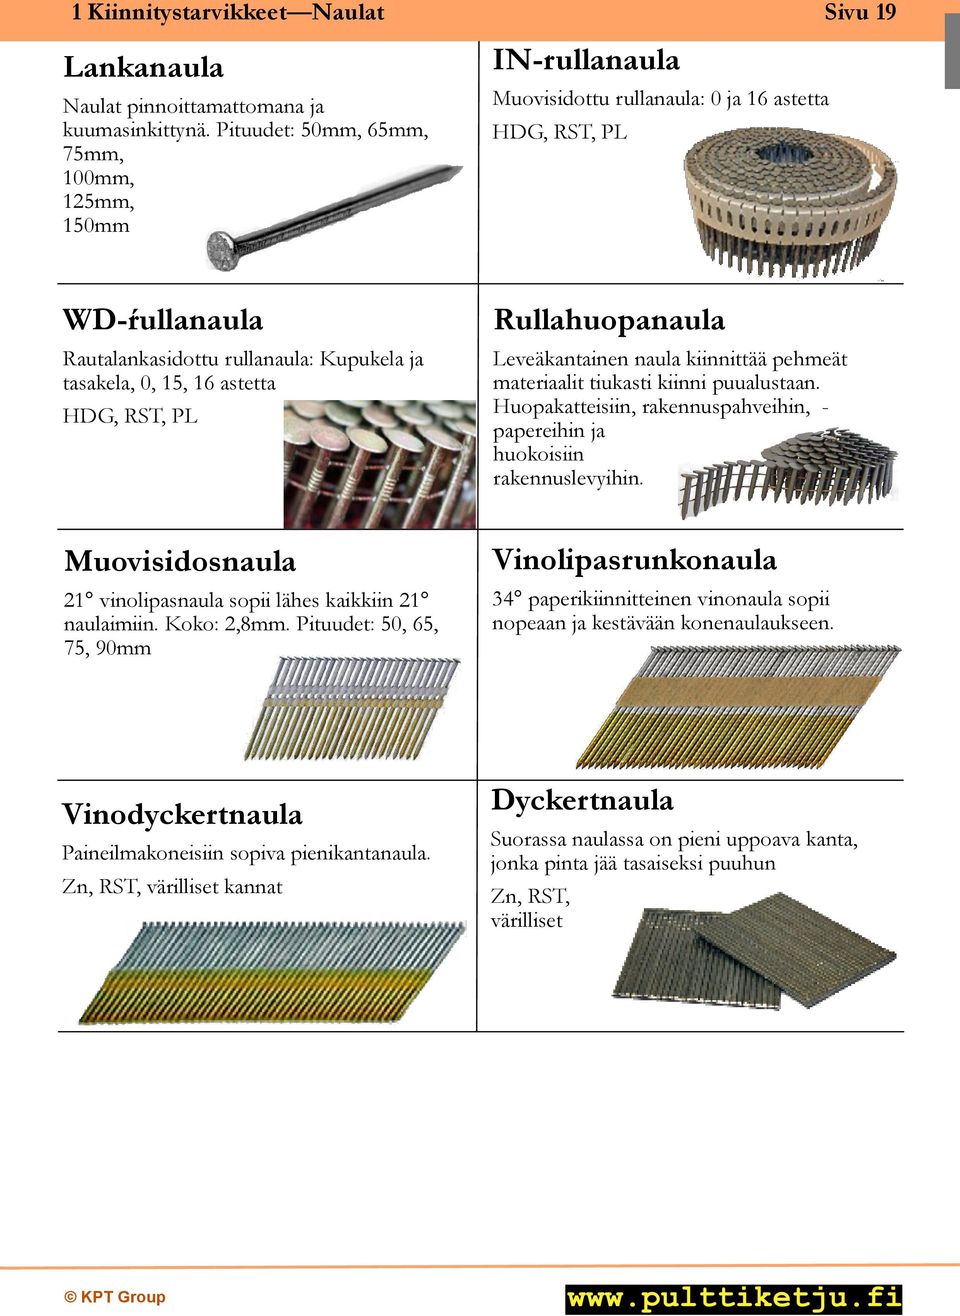 HDG, RST, PL Rullahuopanaula Leveäkantainen naula kiinnittää pehmeät materiaalit tiukasti kiinni puualustaan. Huopakatteisiin, rakennuspahveihin, - papereihin ja huokoisiin rakennuslevyihin.